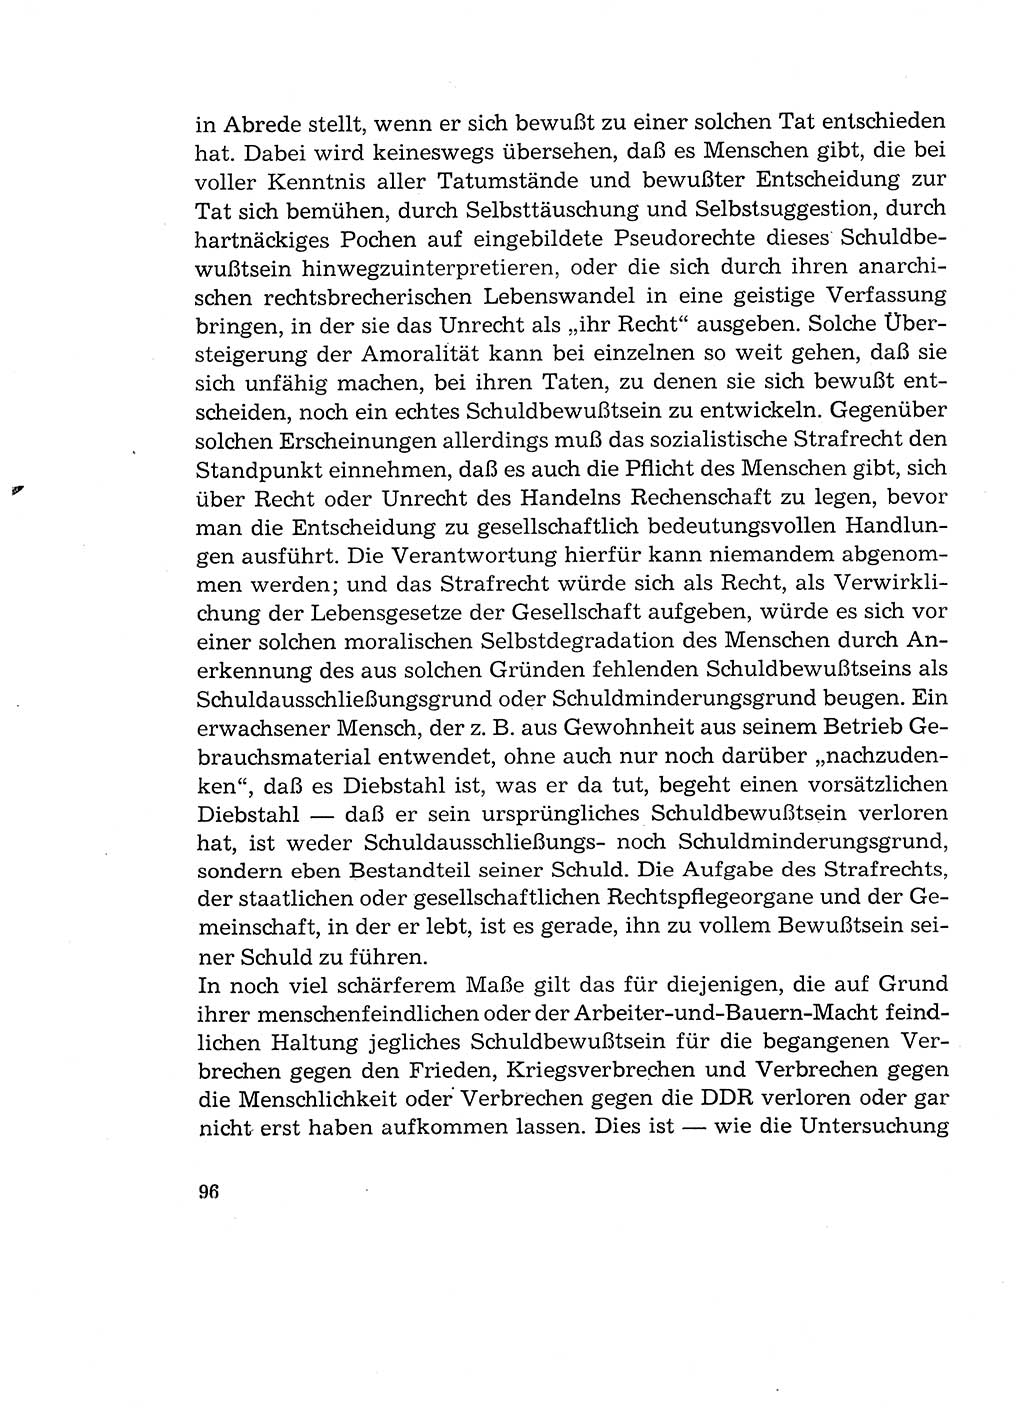 Verantwortung und Schuld im neuen Strafgesetzbuch (StGB) [Deutsche Demokratische Republik (DDR)] 1964, Seite 96 (Verantw. Sch. StGB DDR 1964, S. 96)